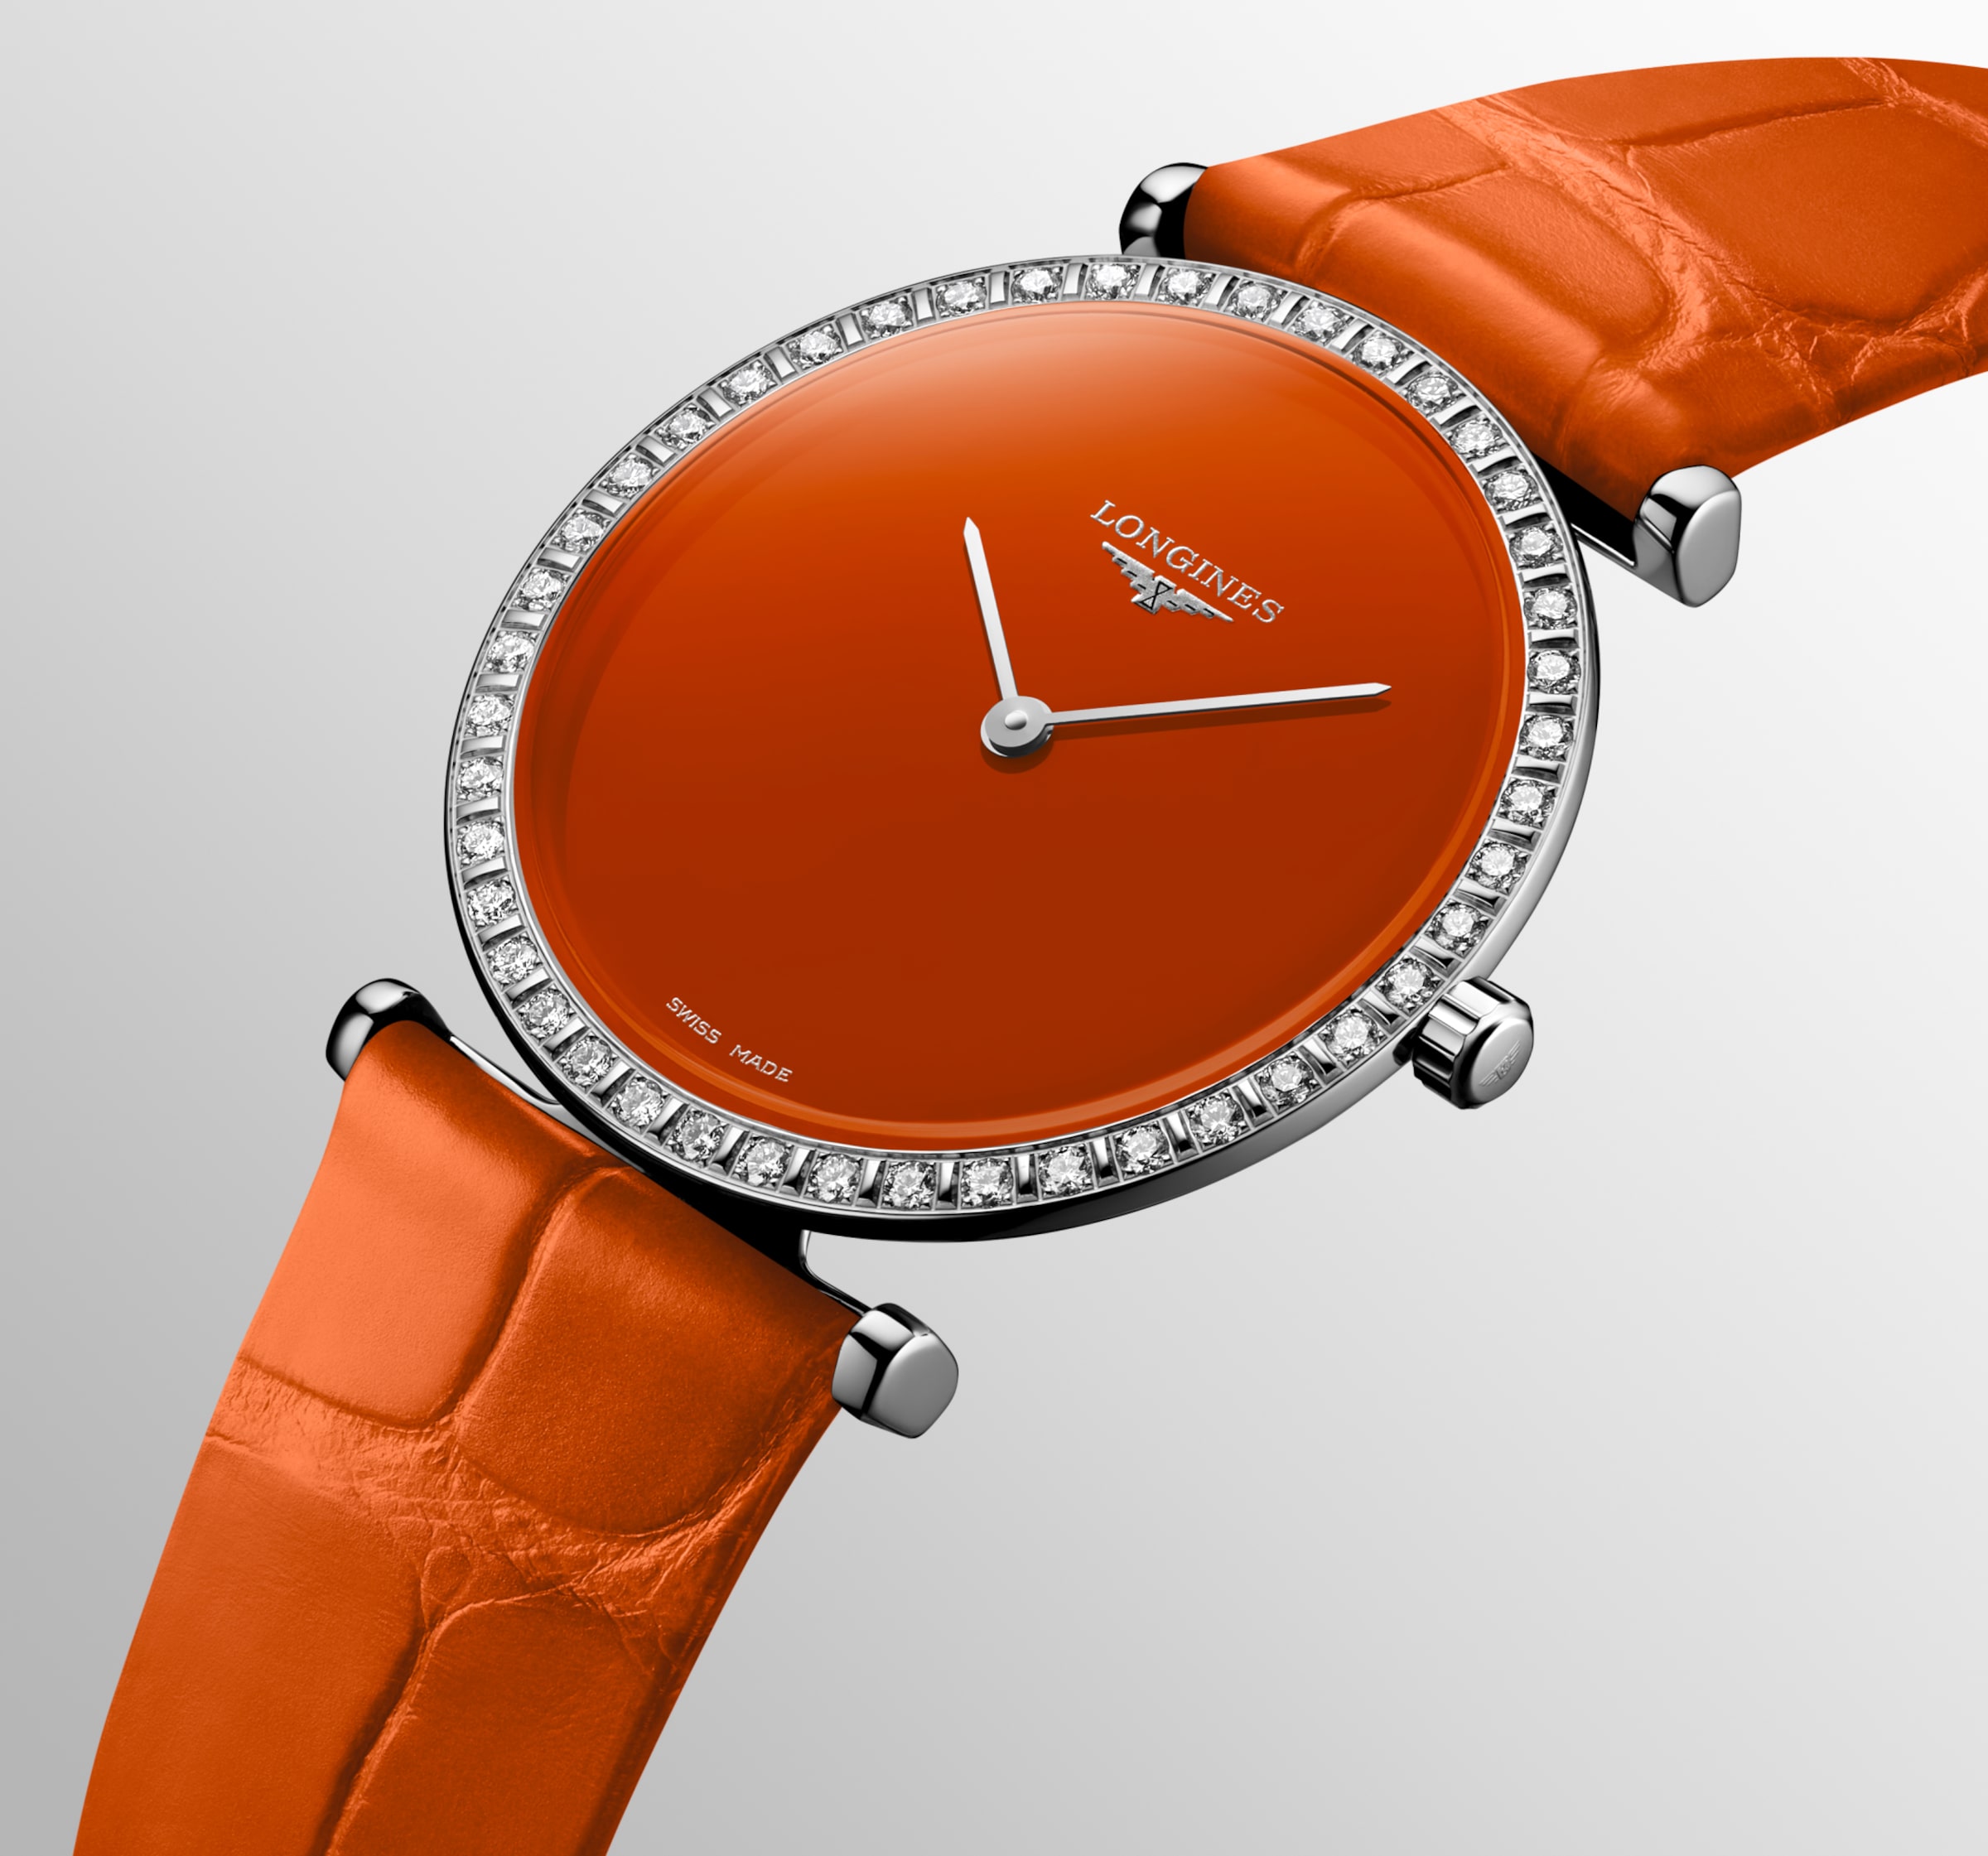 Longines LA GRANDE CLASSIQUE DE LONGINES Quartz Stainless steel Watch - L4.523.0.92.2